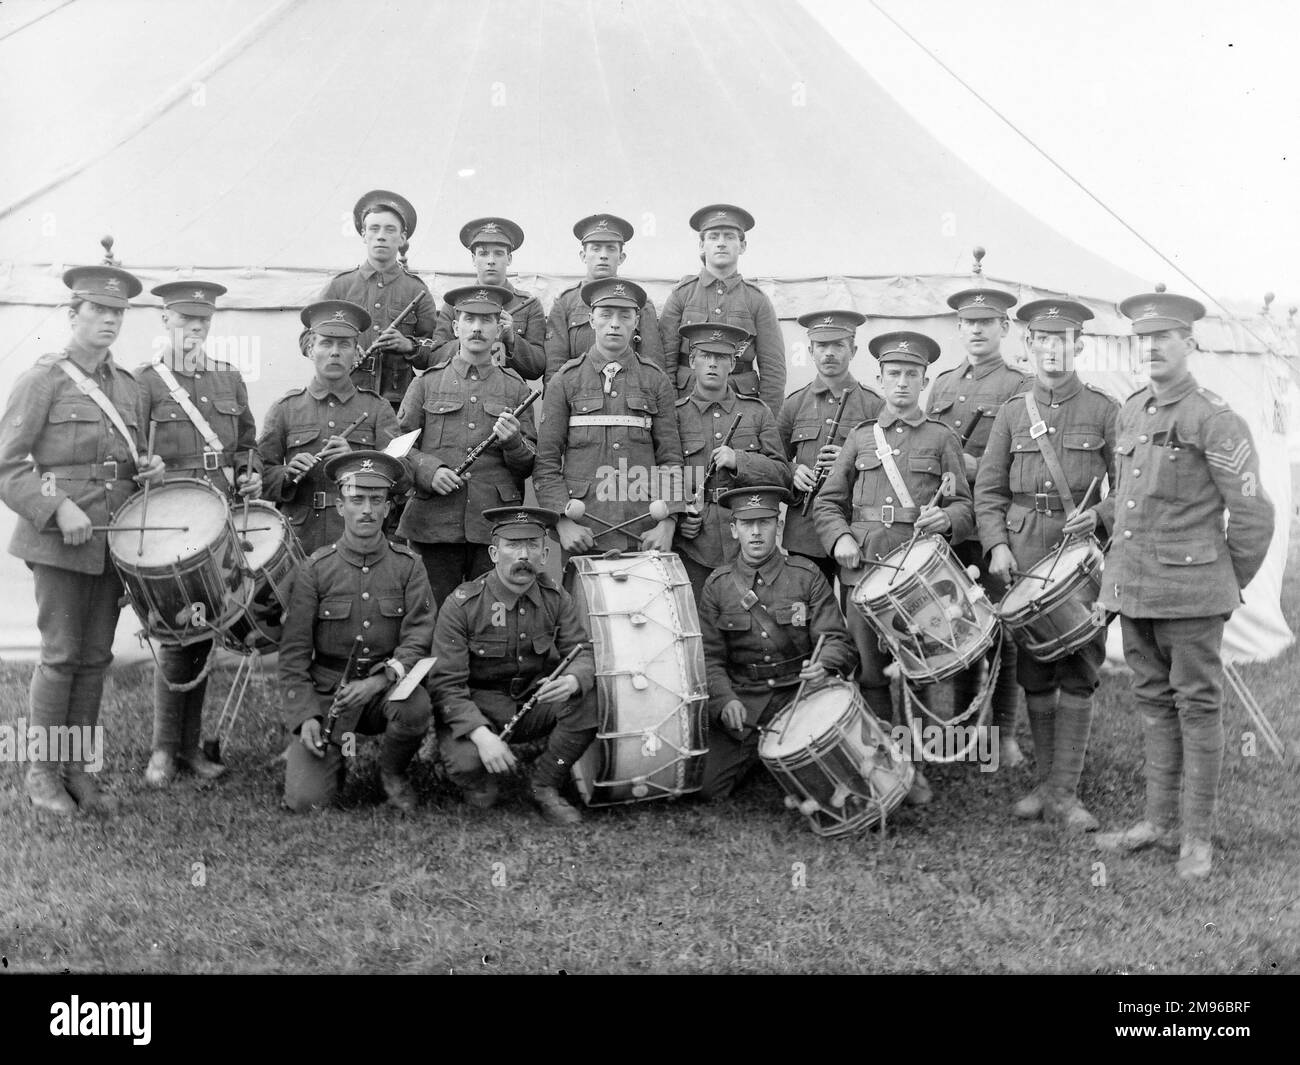 Una banda militar, los Brecknockshire Battalion South Wales Borderers, junto con sus instrumentos, incluyendo seis tambores, posando para su foto frente a una tienda de campaña. Foto de stock